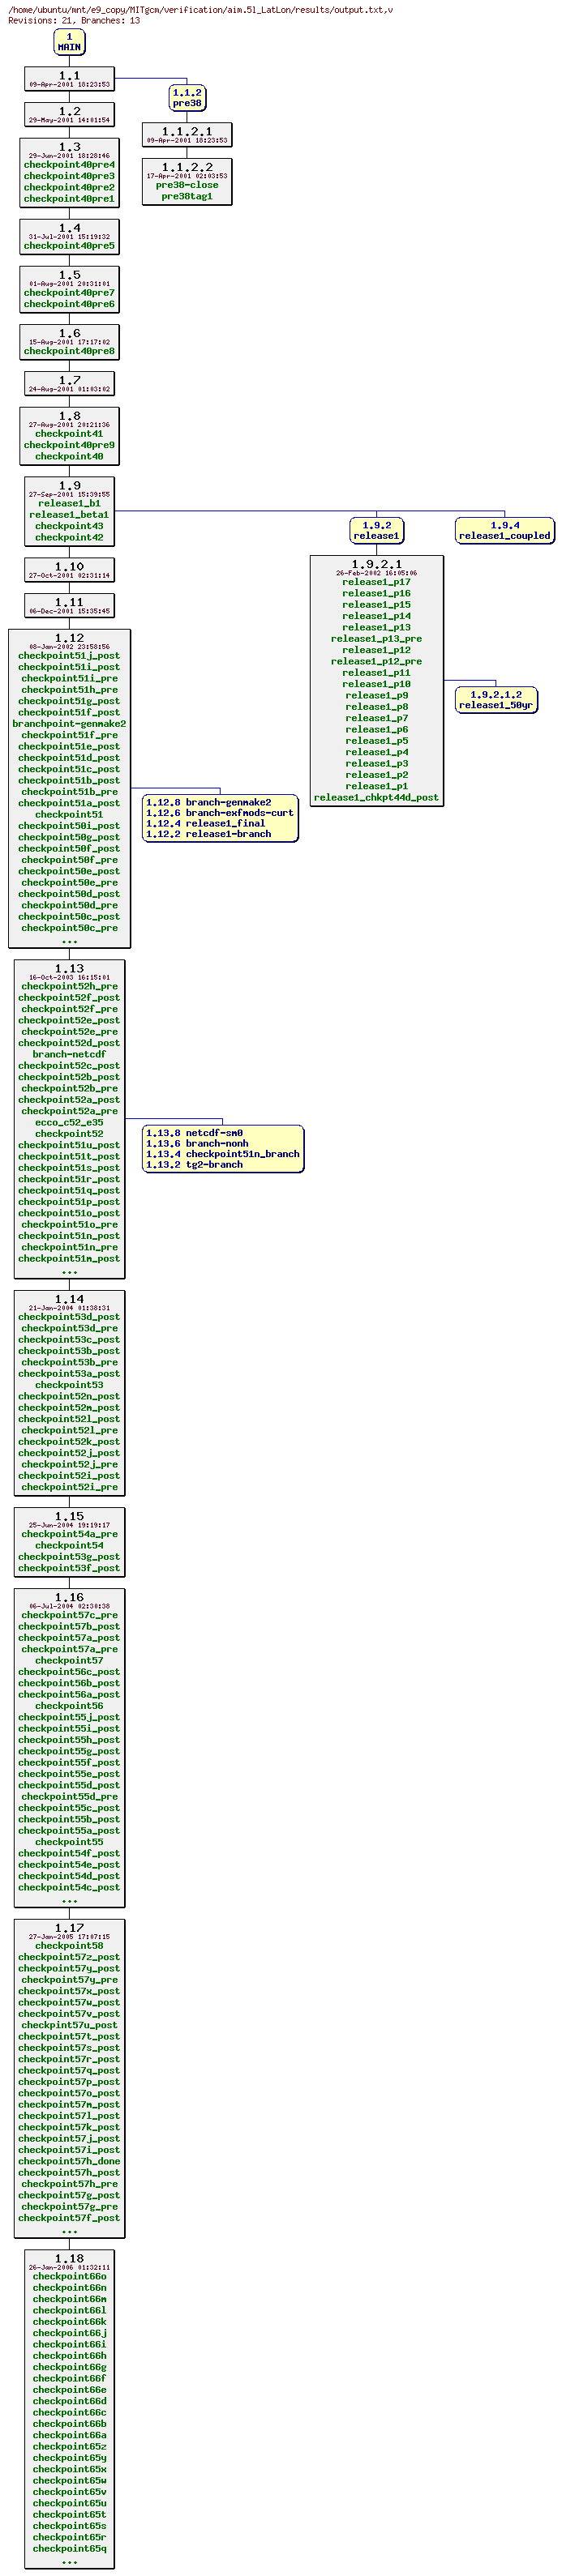 Revisions of MITgcm/verification/aim.5l_LatLon/results/output.txt